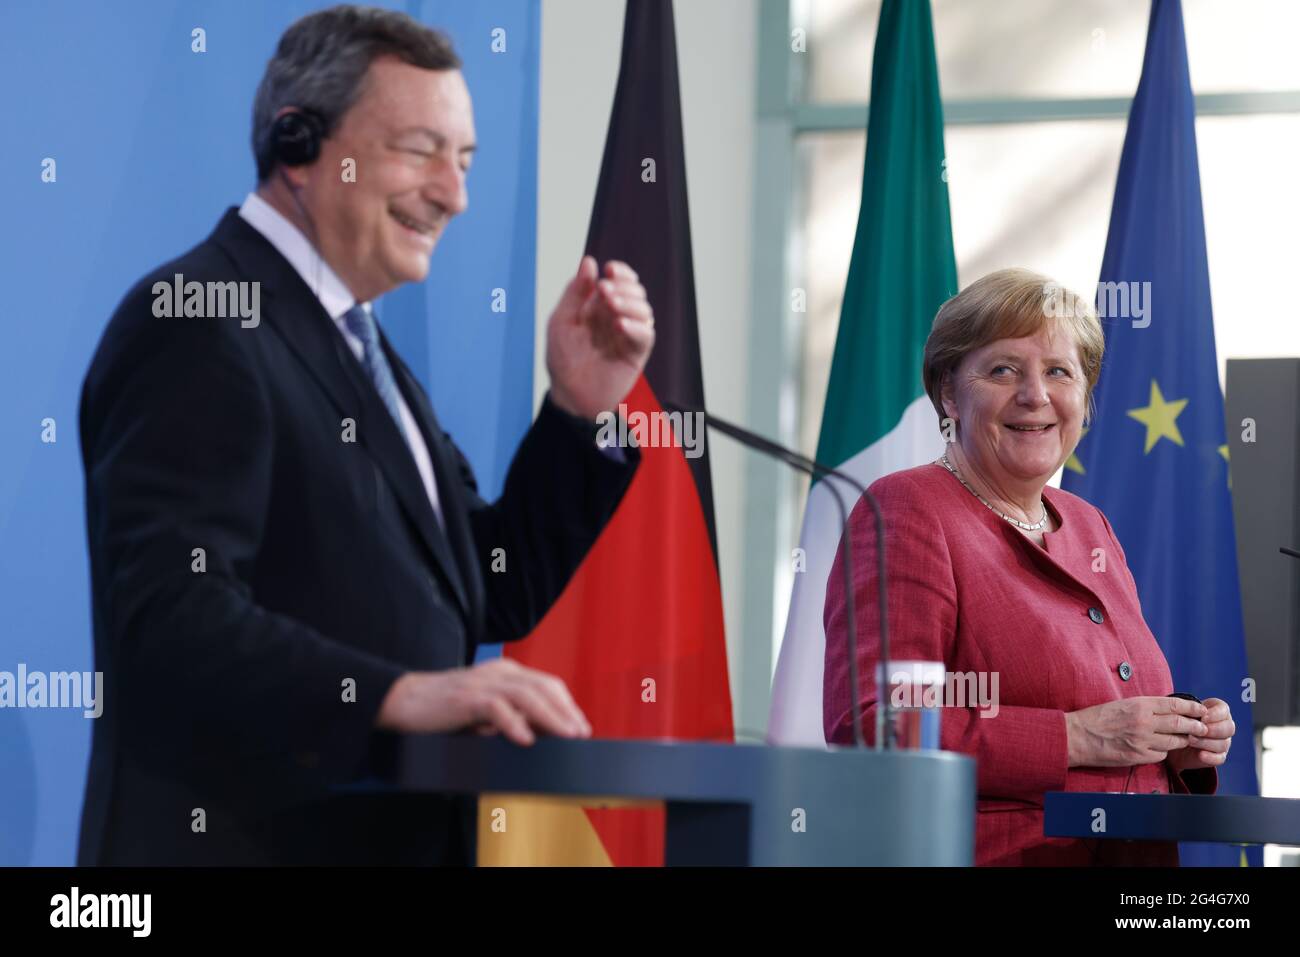 Berlin, Allemagne. 21 juin 2021. La chancelière allemande Angela Merkel (R, CDU) et Mario Draghi, Premier ministre italien, tiennent une conférence de presse à la Chancellerie fédérale. Draghi est à Berlin pour sa visite inaugurale. Crédit : ODD Andersen/AFP-Pool/dpa/Alay Live News Banque D'Images